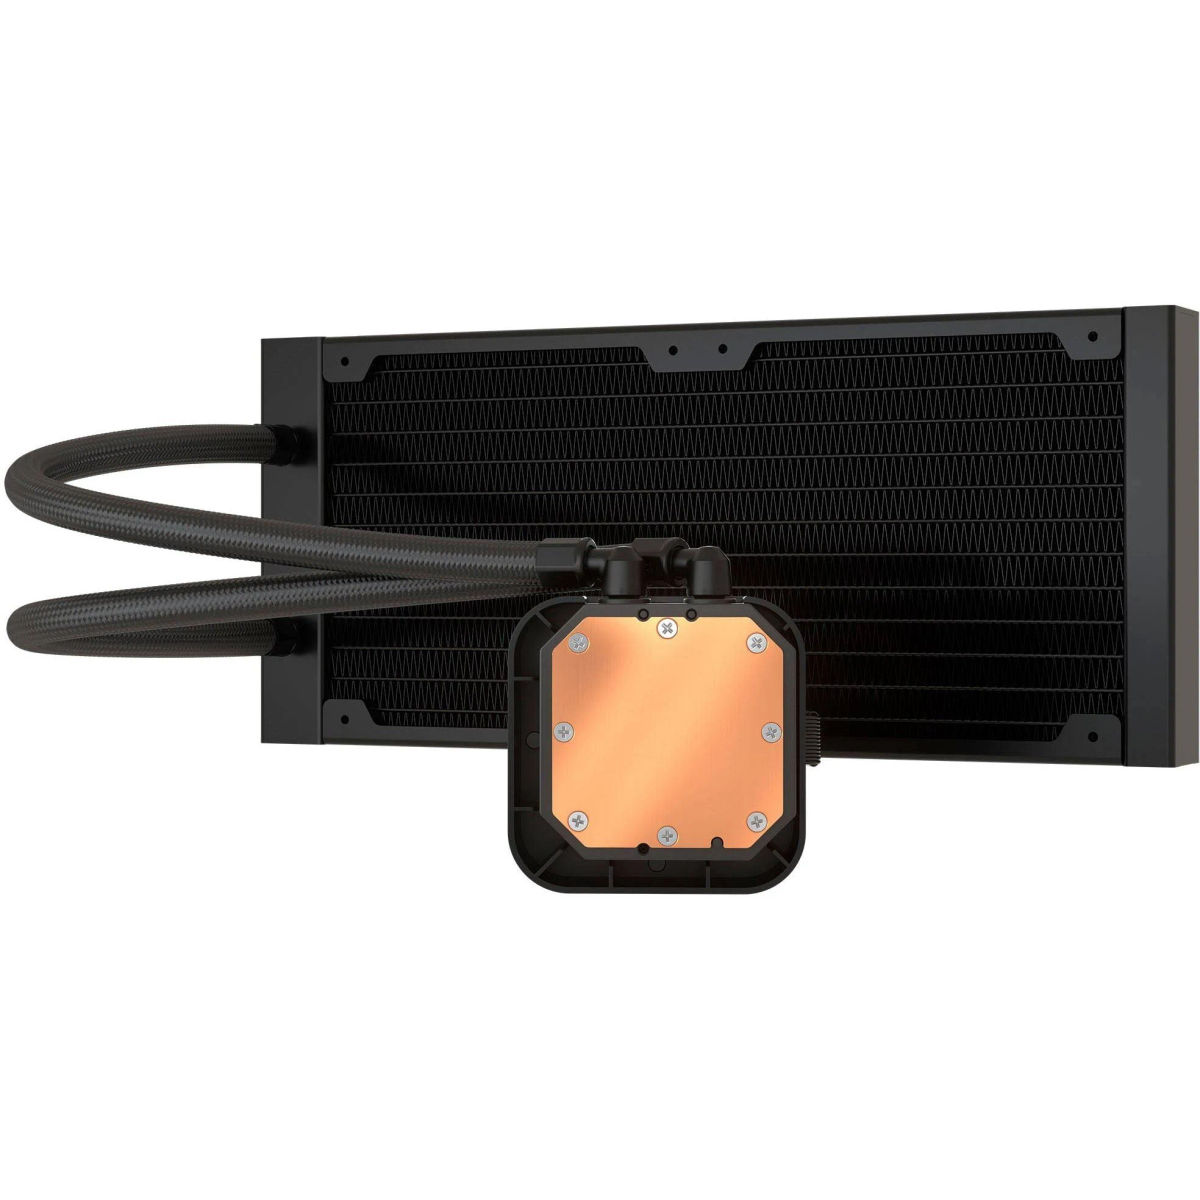 Wasserkühler CORSAIR H100i LCD ICue Wasserkühler, schwarz Elite CPU